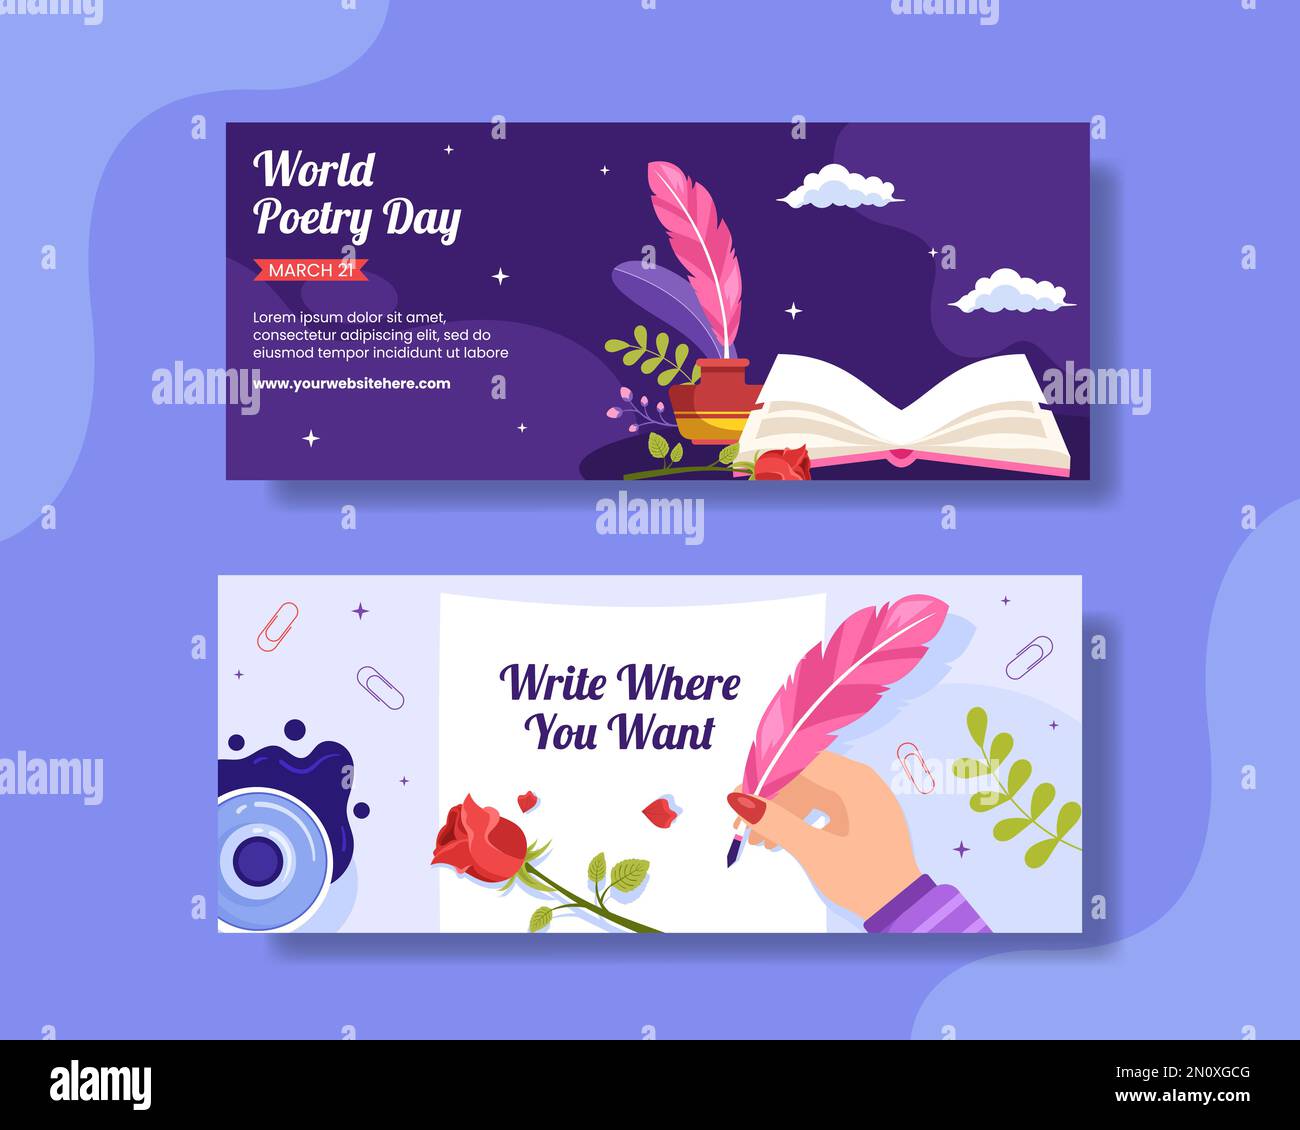 Banner orizzontale World Poetry Day con carta e cartoni piatti Quill modelli disegnati a mano Illustrazione Illustrazione Vettoriale